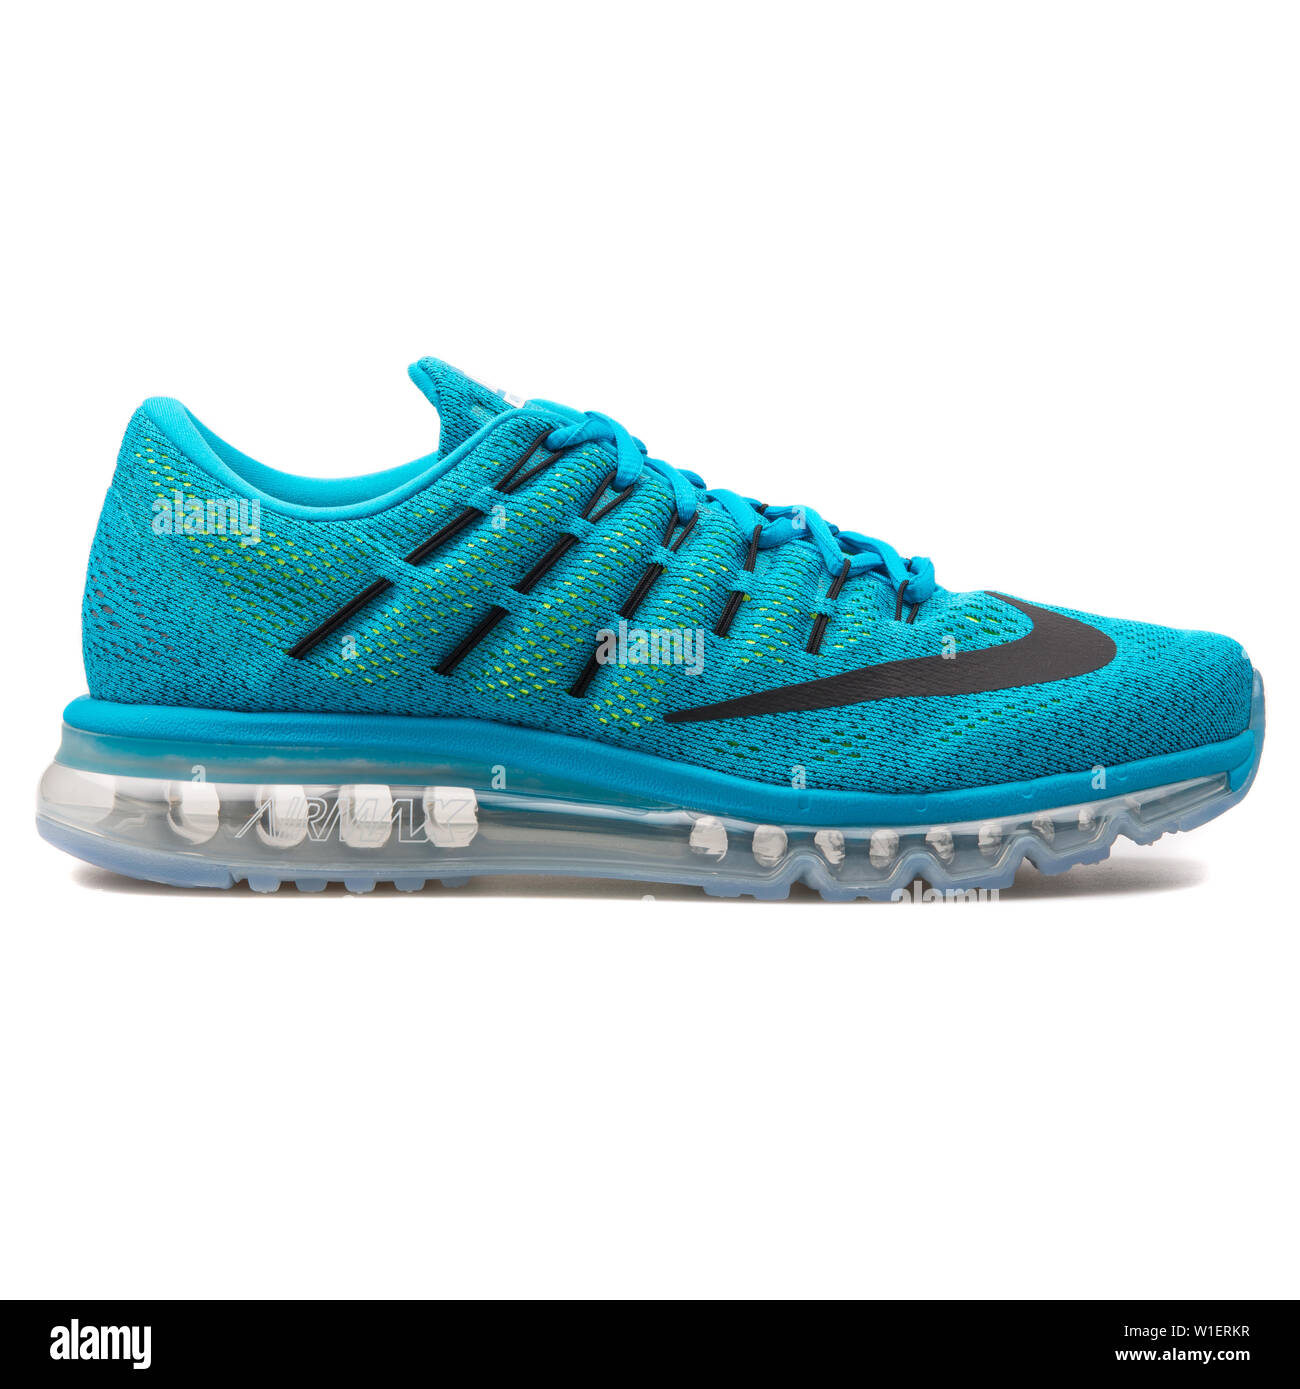 Yogur Costoso Oceano Nike air max sneakers Imágenes recortadas de stock - Página 3 - Alamy